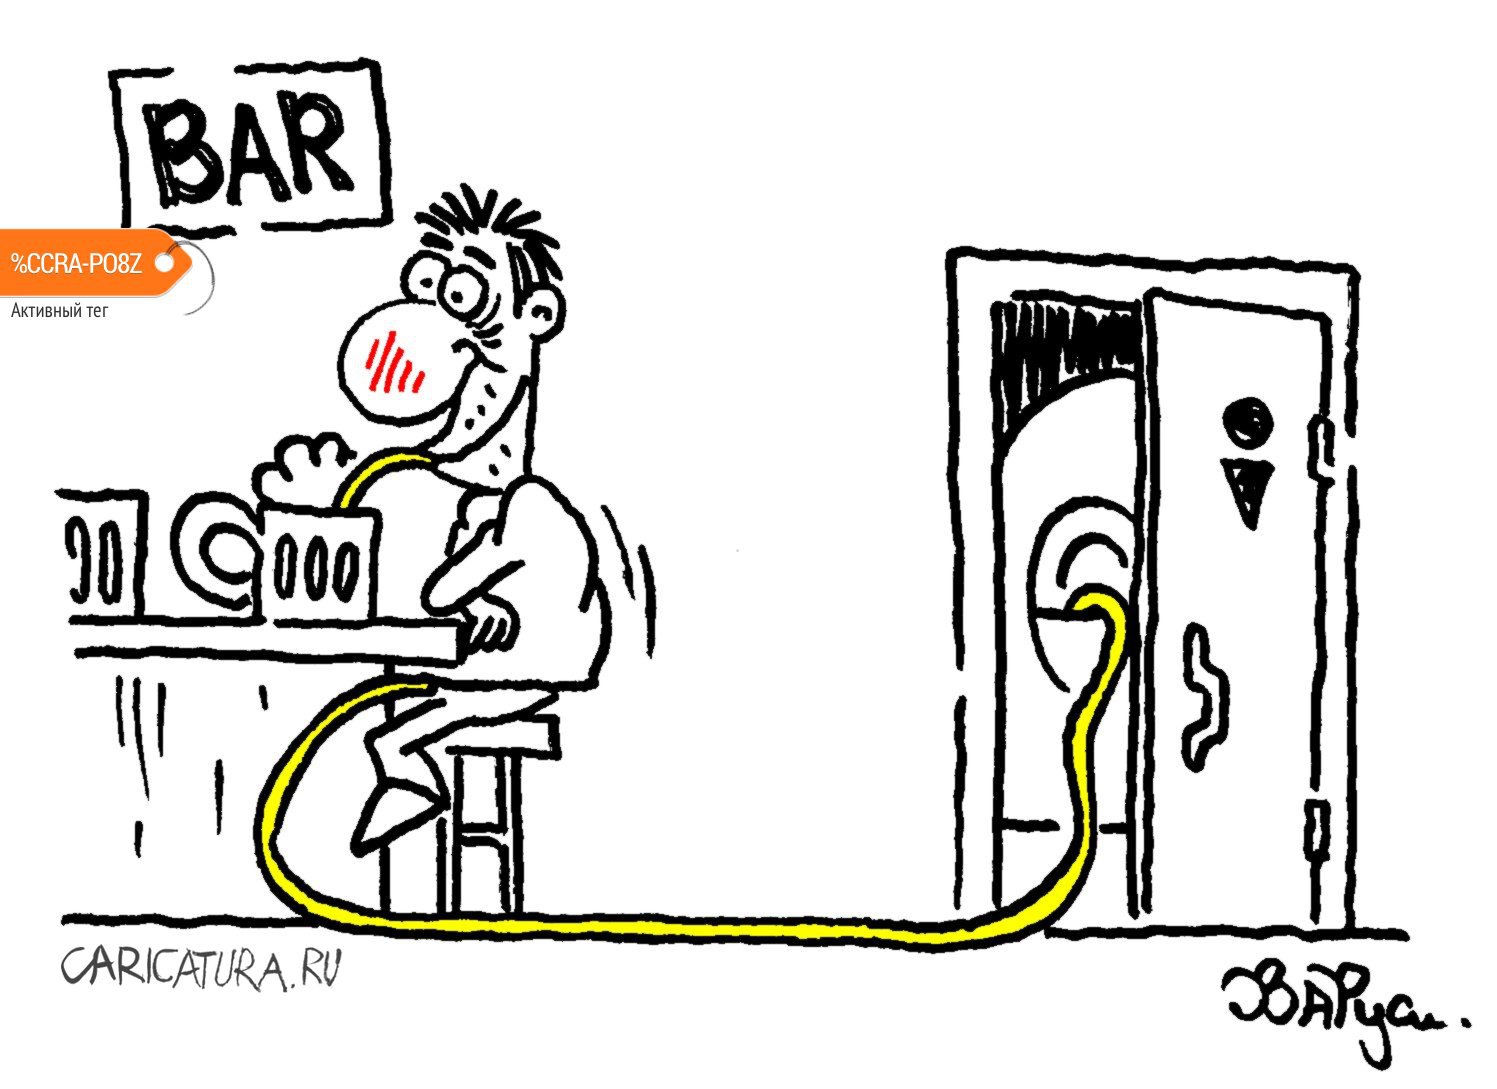 Карикатура "В баре", Руслан Валитов